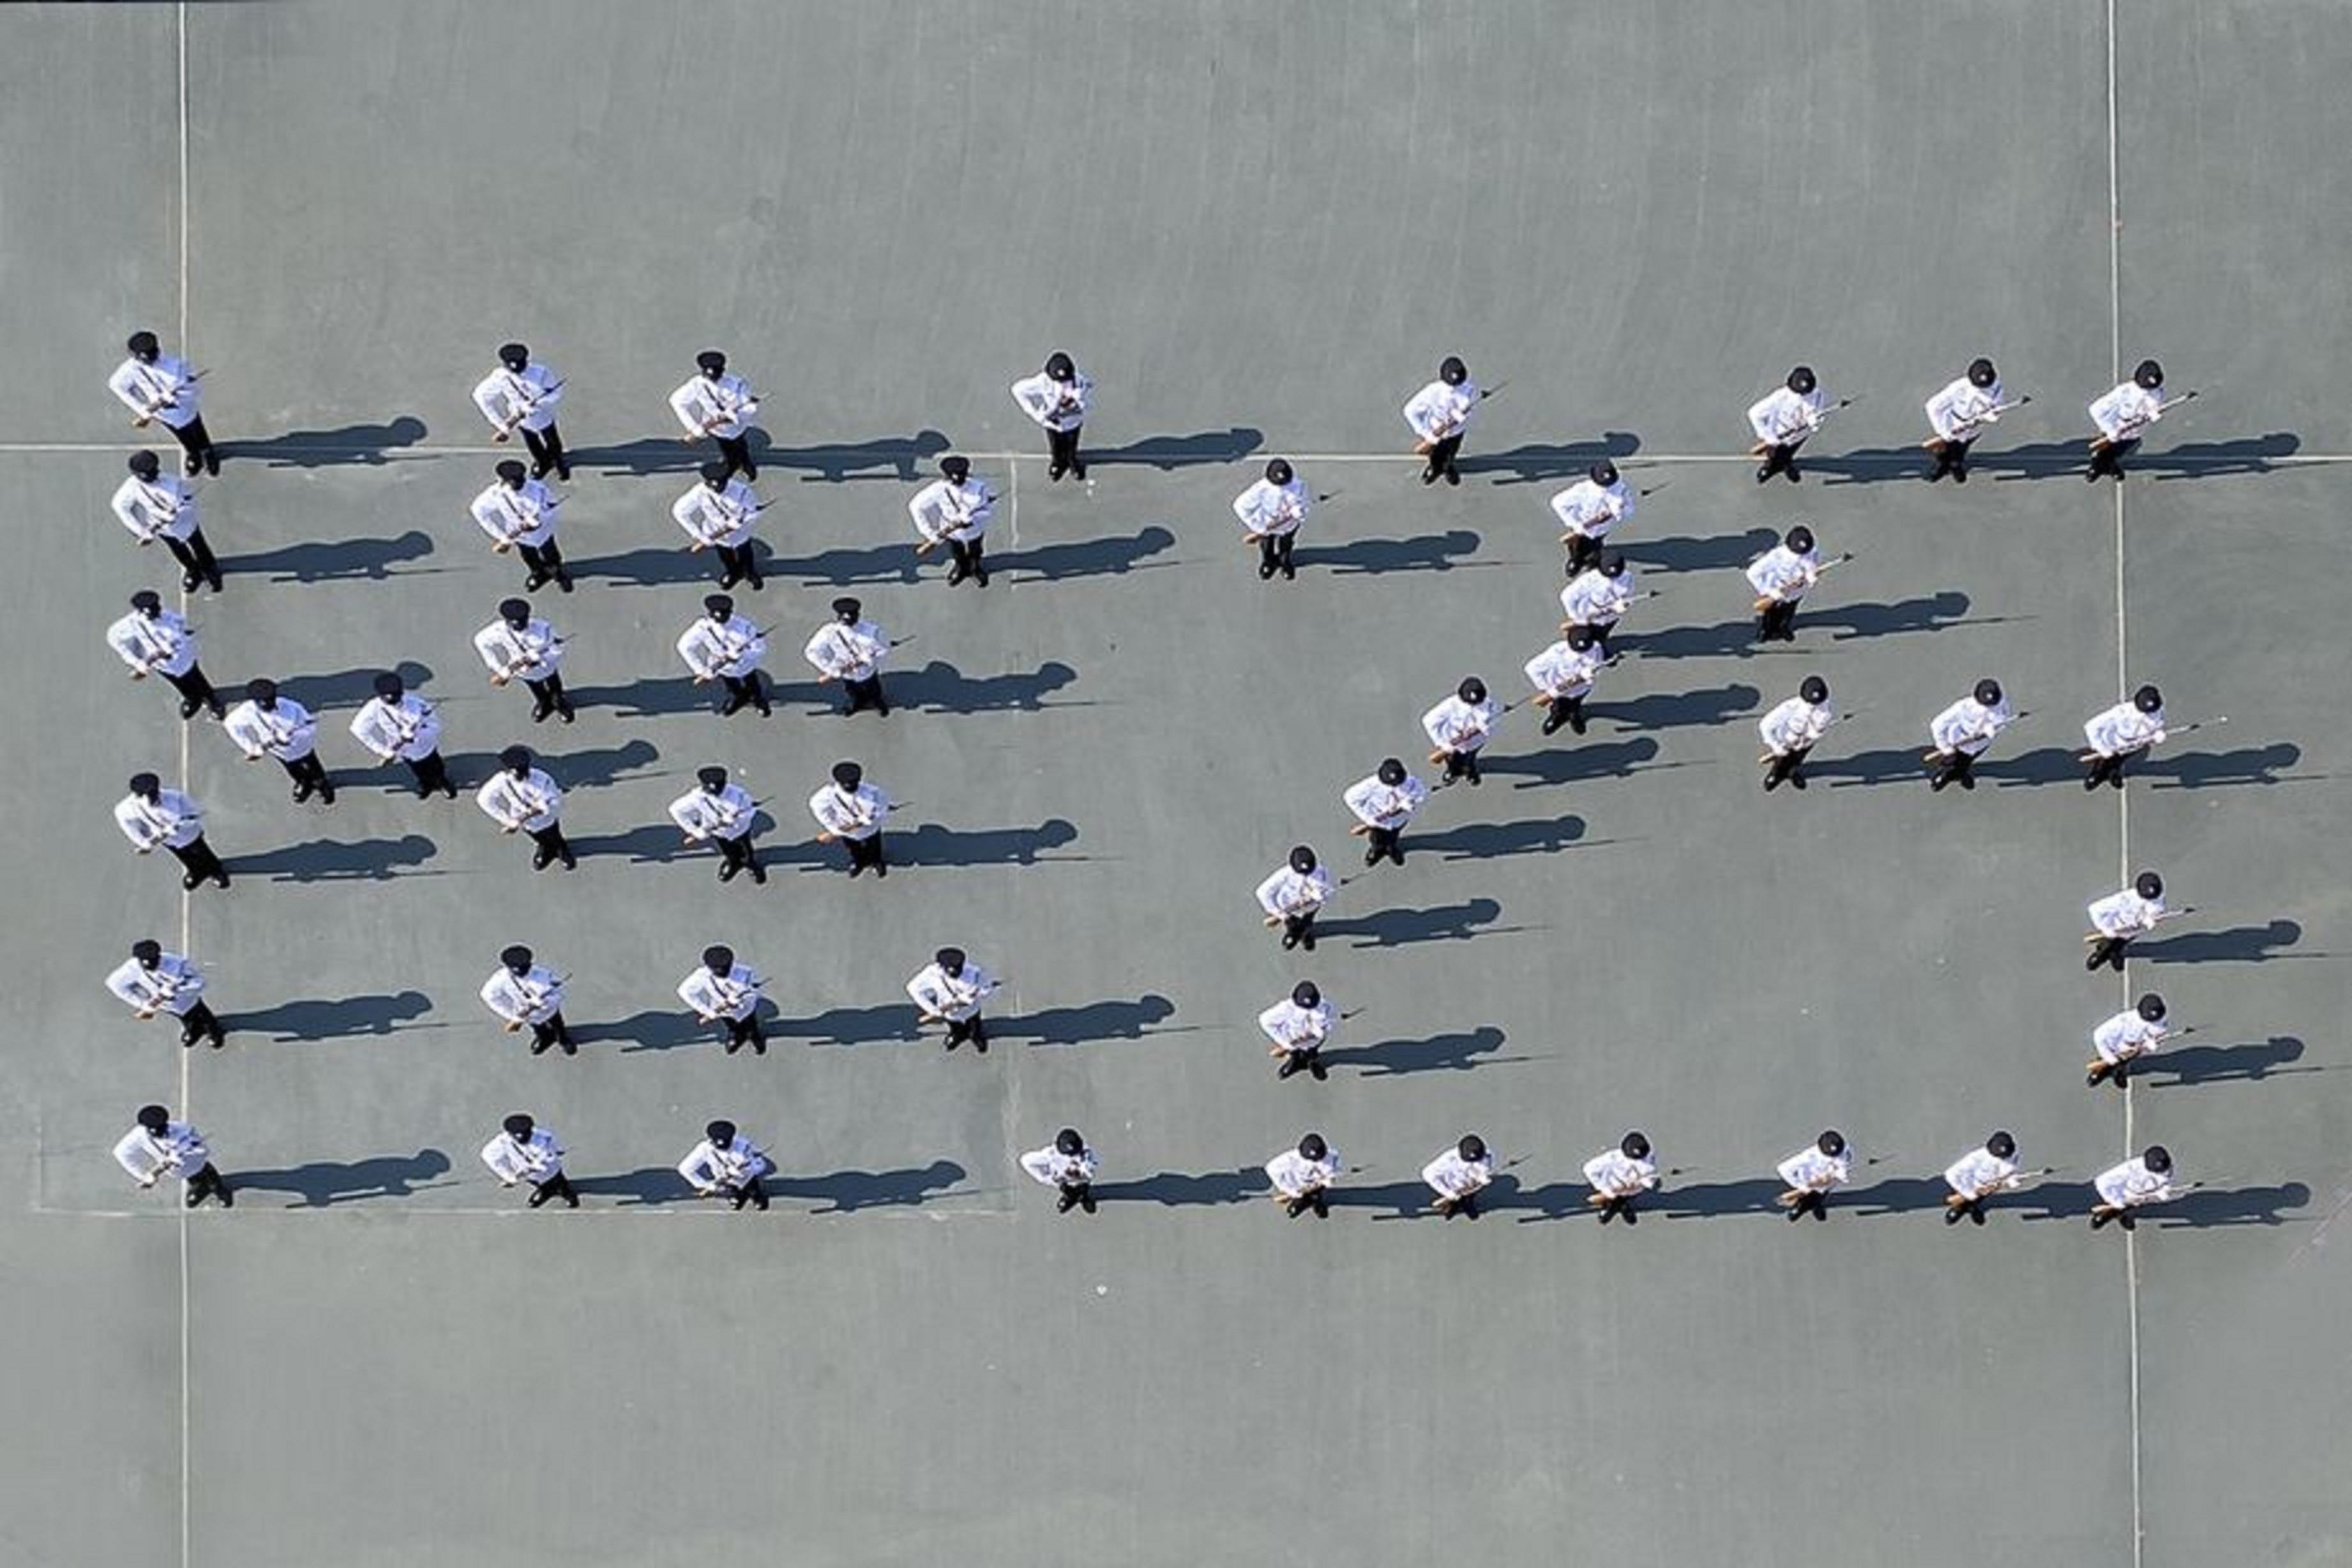 入境事务学院今日（十月二十九日）举行开放日。图示入境事务处仪仗队整齐地排列出「HK25」，以庆祝香港特别行政区成立二十五周年。